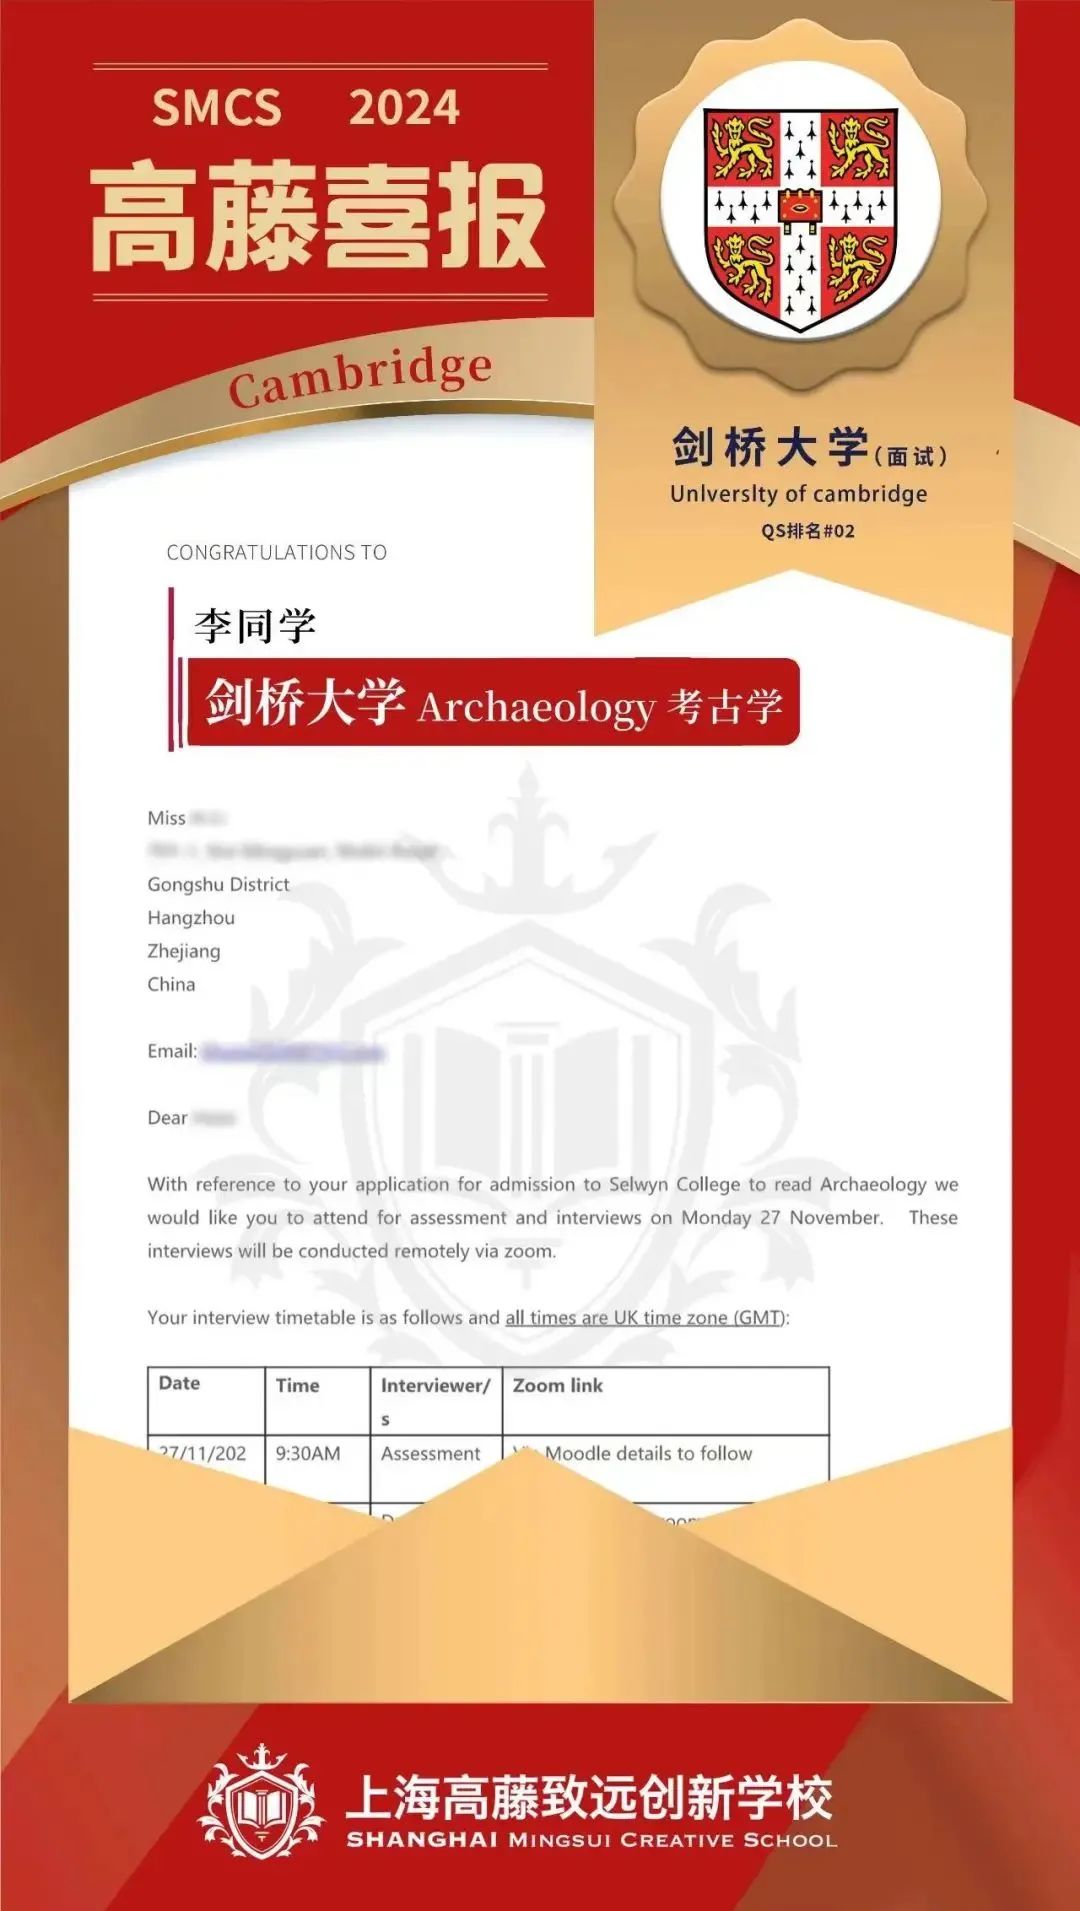 又是一年牛剑面邀Offer发放时~哪些沪杭国际学校收到Offer了呢？一起来看看！